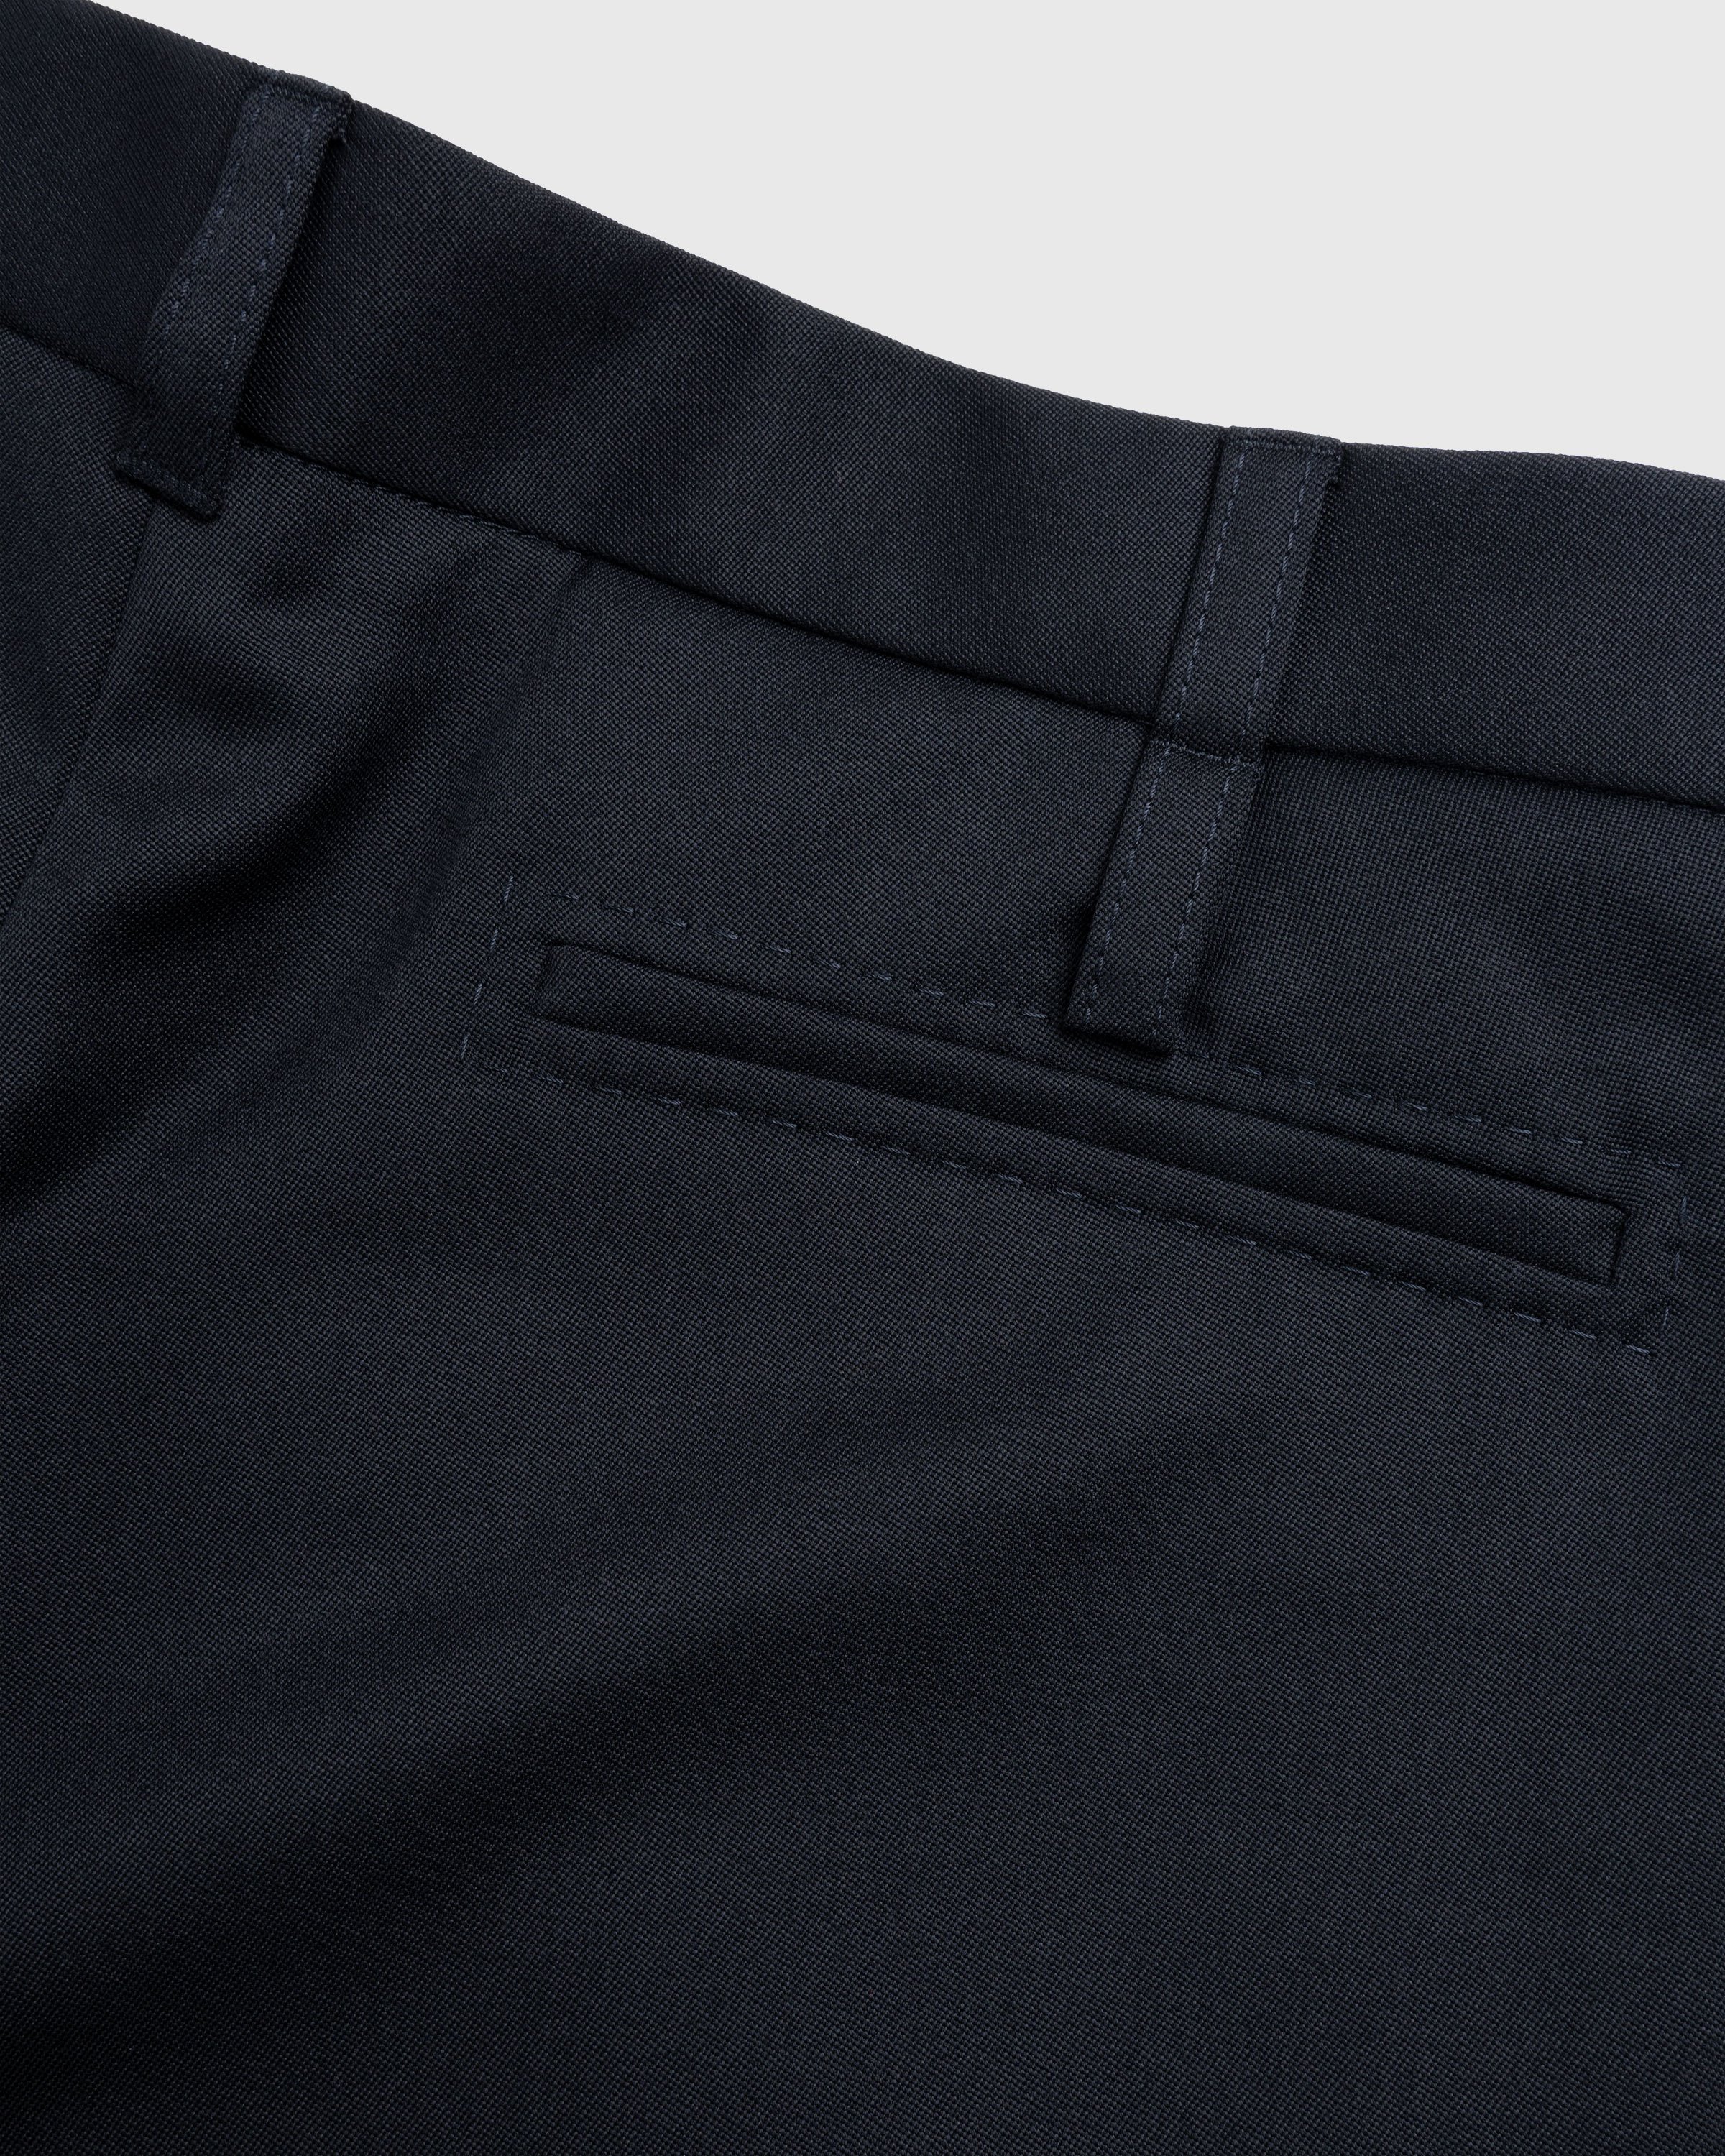 JACQUEMUS - Le Pantalon Piccinni Black - Clothing - BLACK - Image 7